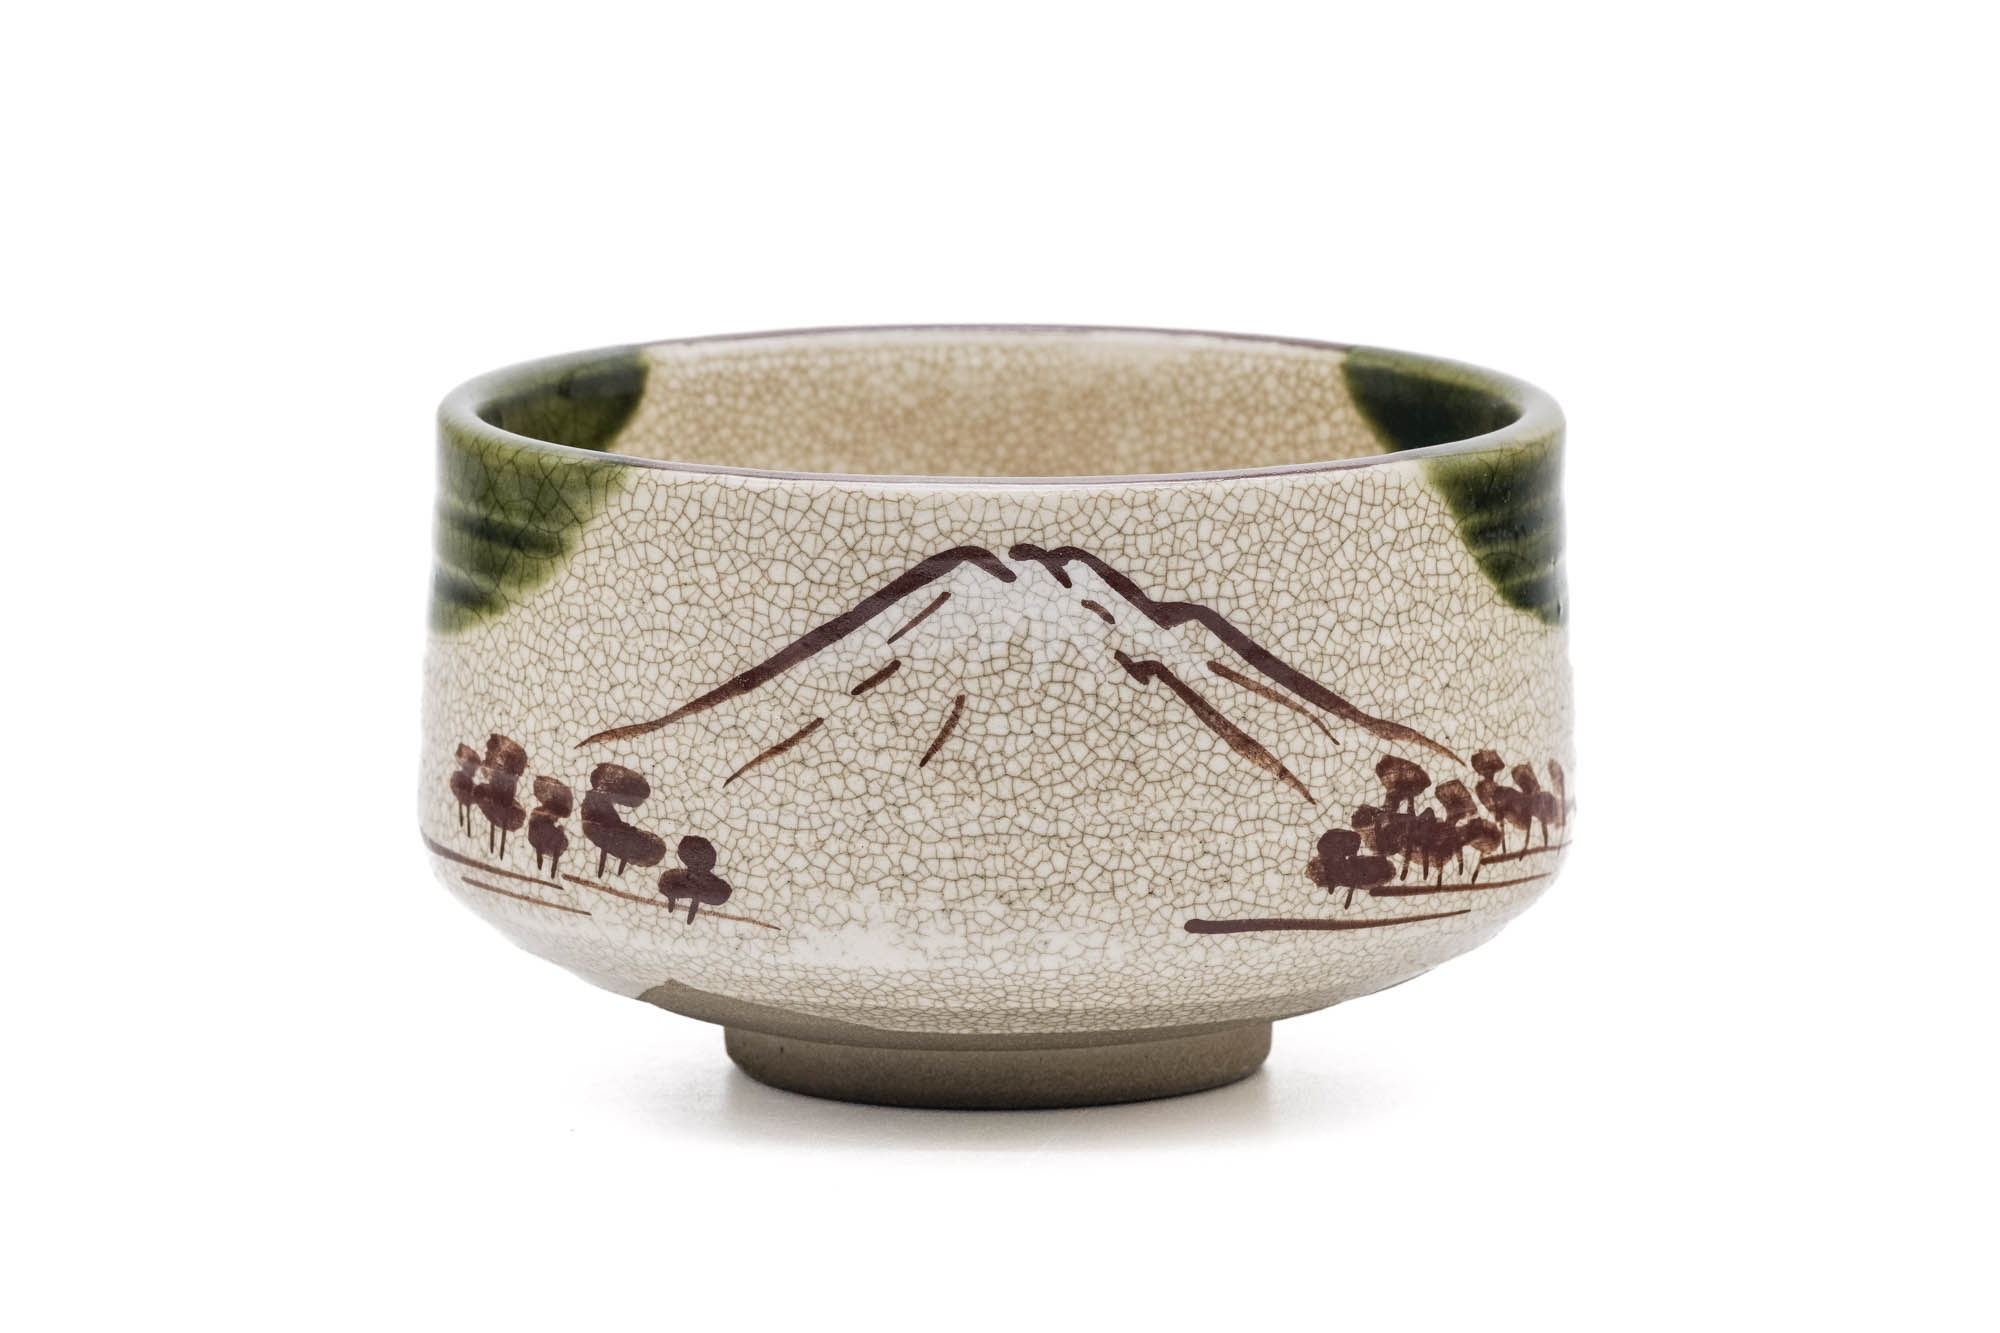 Japanese Matcha Bowl - Mount Fuji Ao-Oribe Chawan - 350ml